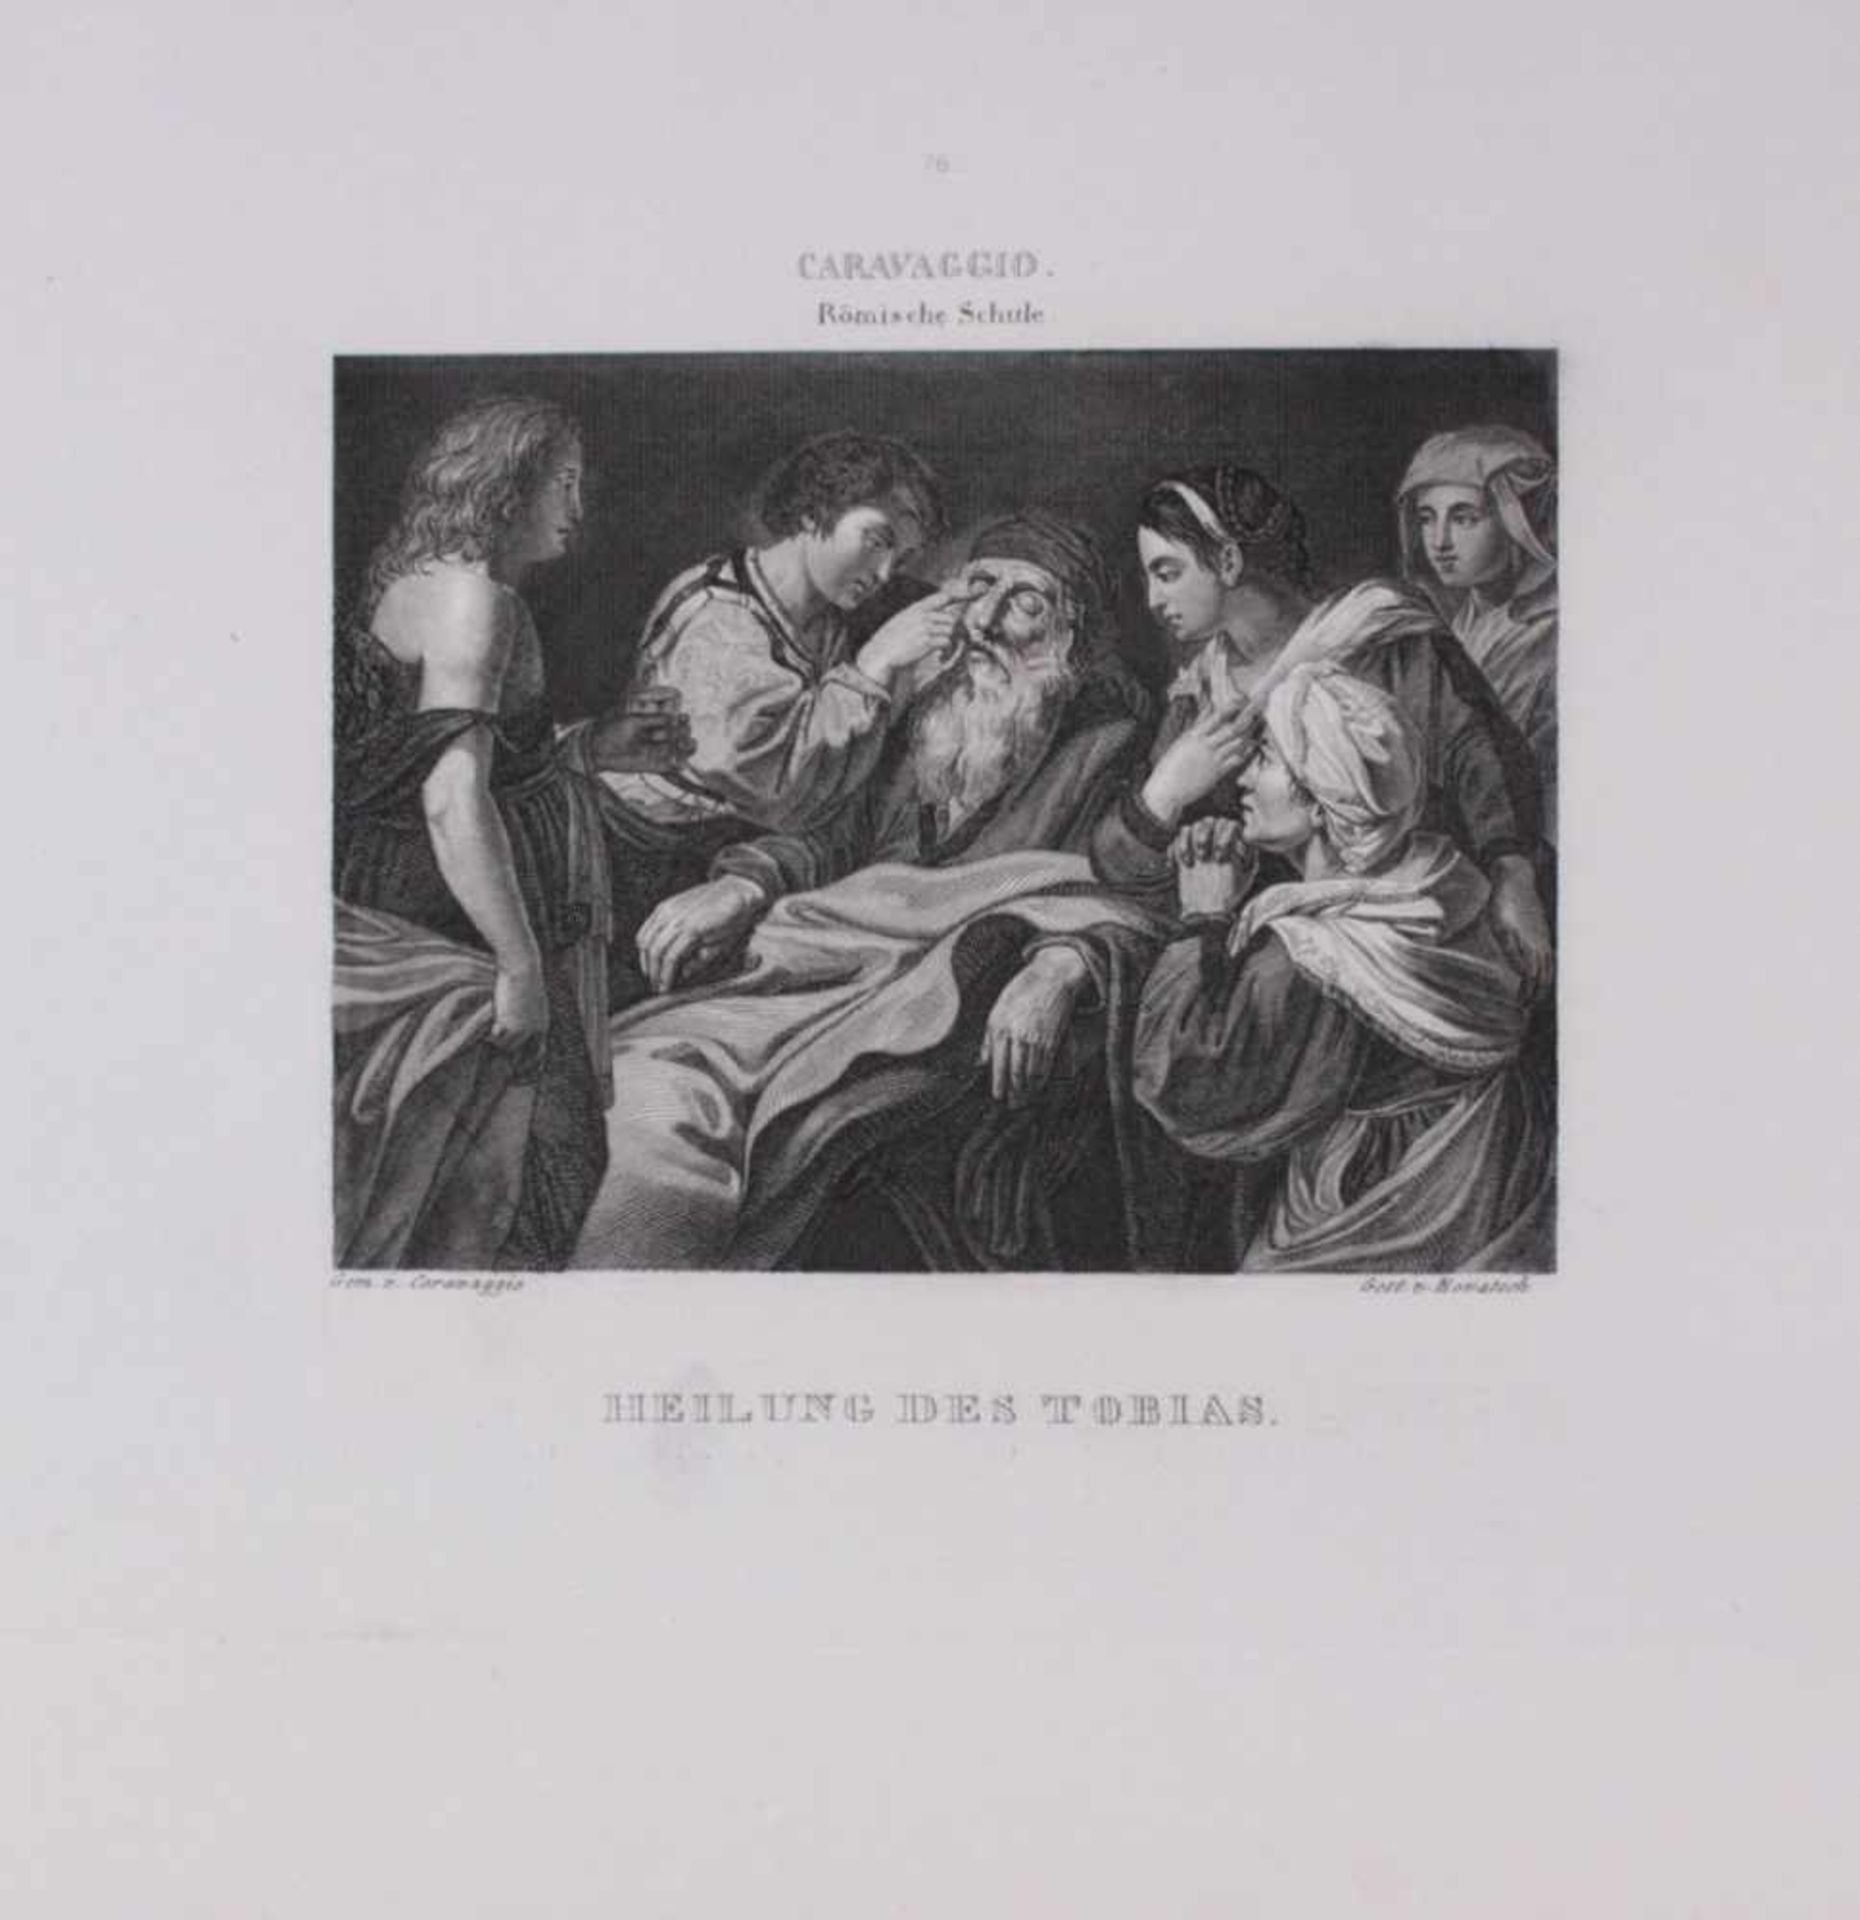 2 Stahlstische um 1840. Heilung des alten Tobias -Der Junge Tobias, nach Caravaggio und And. del - Image 3 of 3